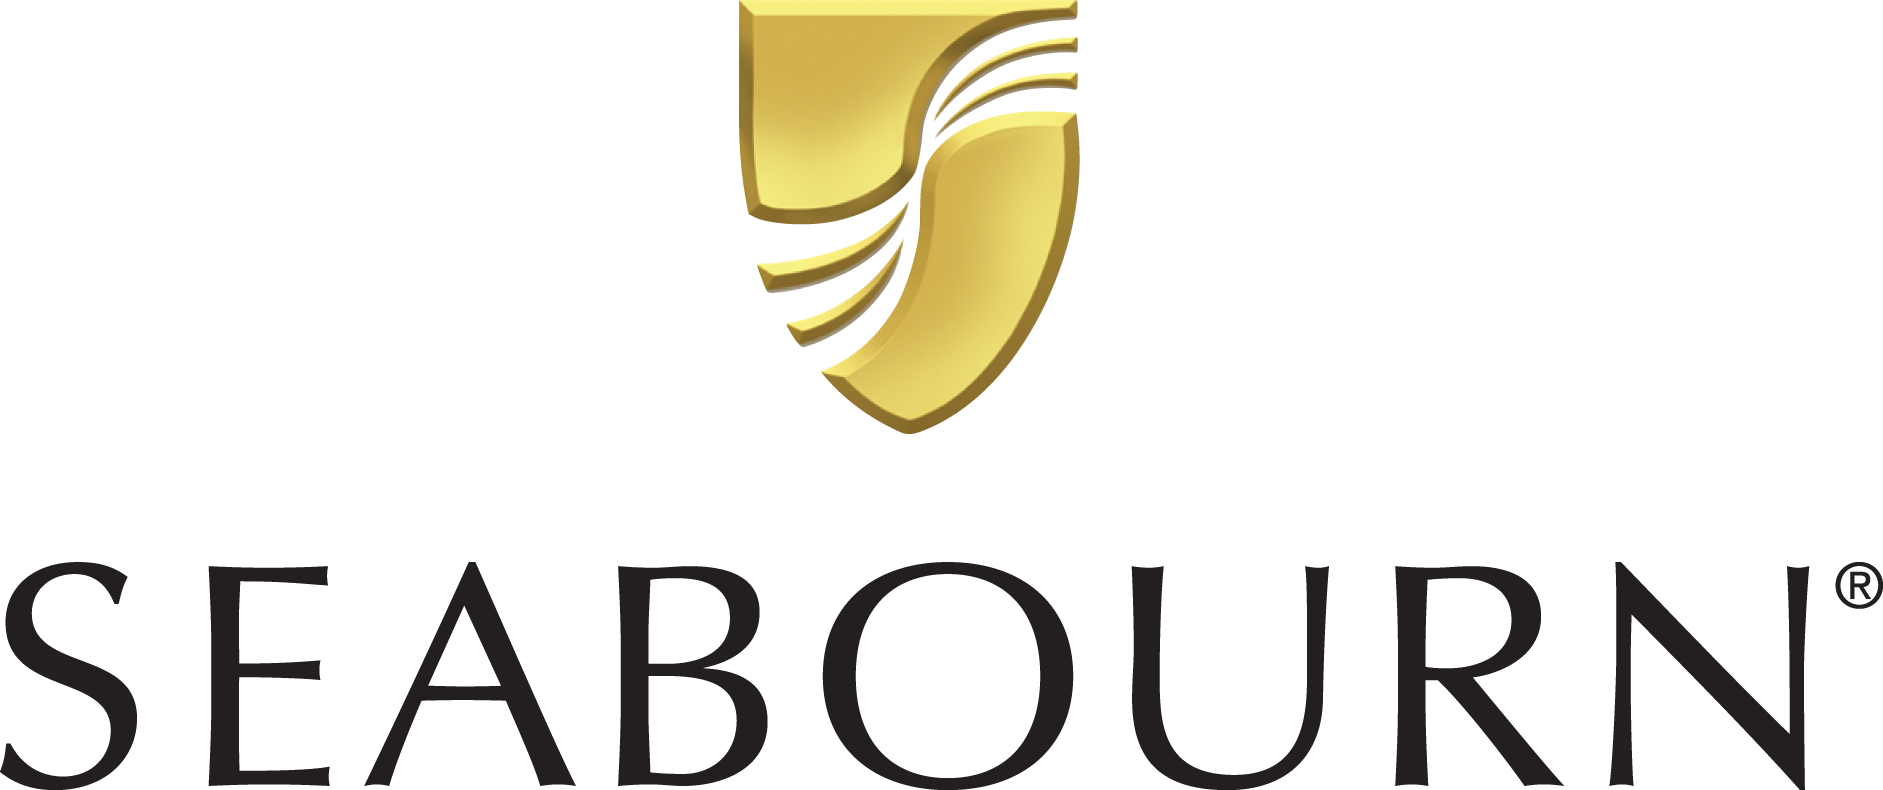 Seabourn Odyssey Reederei Logo